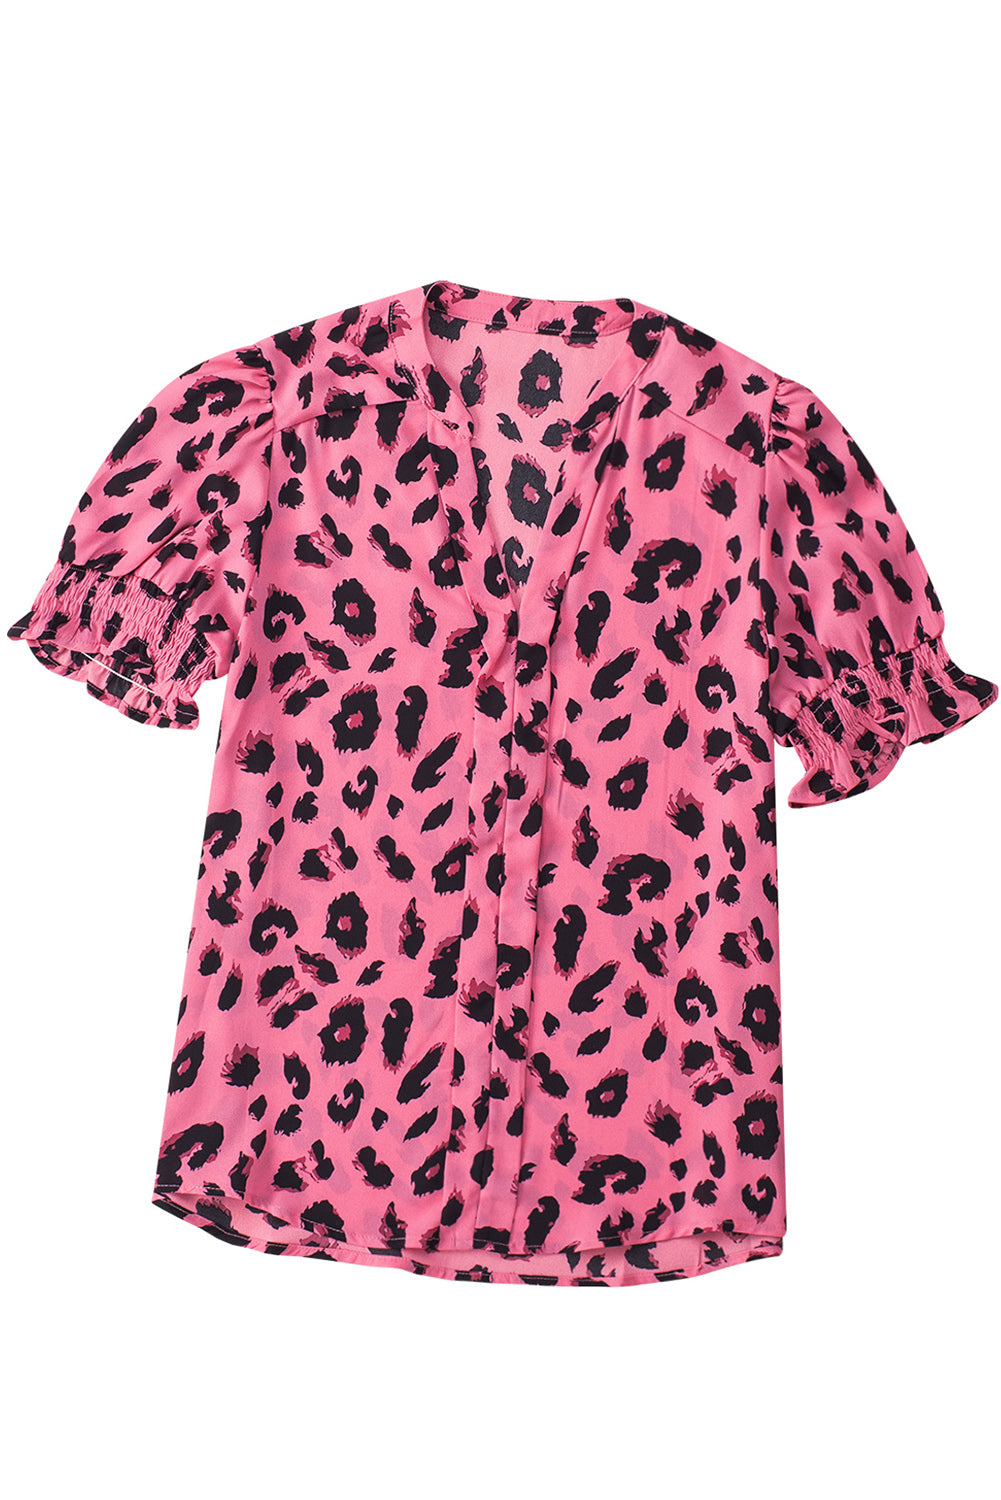 Rosafarbene Bluse mit eingekerbtem Ausschnitt und Blasenärmeln und Leopardenmuster